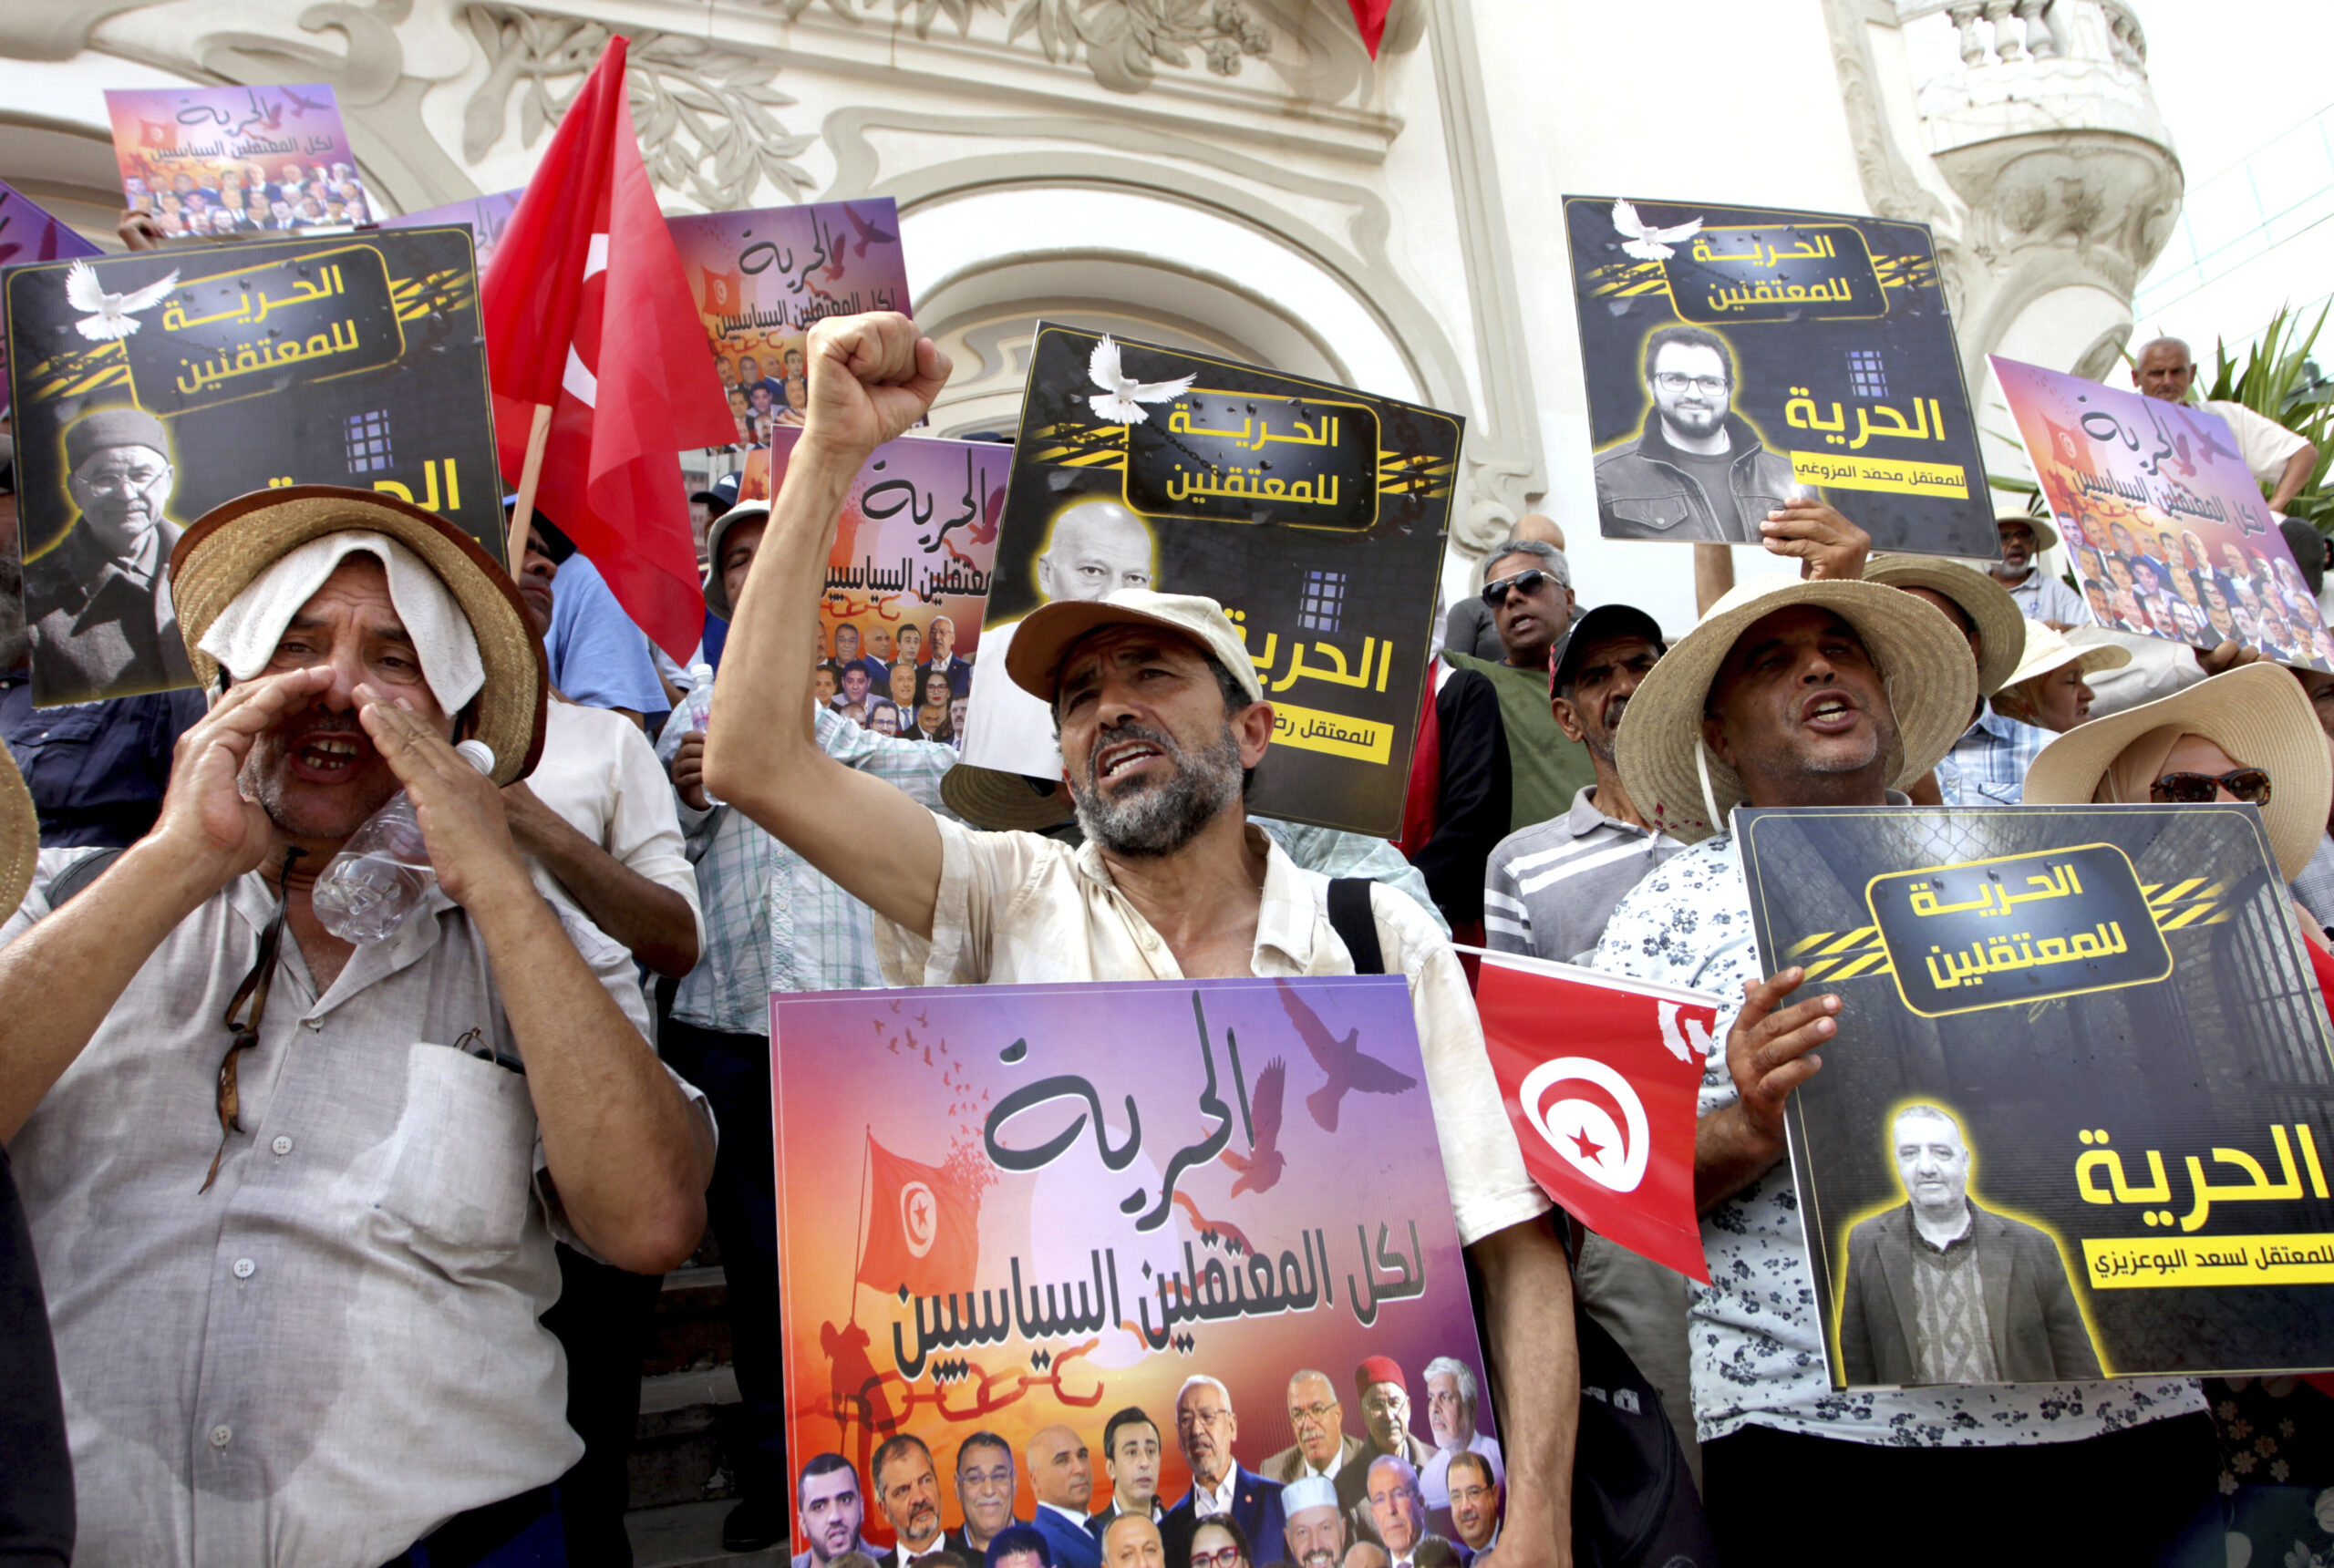 Τυνησία: Διαδηλώσεις κατά του προέδρου Σάγιεντ στην Τύνιδα – Επανέρχεται στο προσκήνιο η Μουσουλμανική Αδεφότητα;